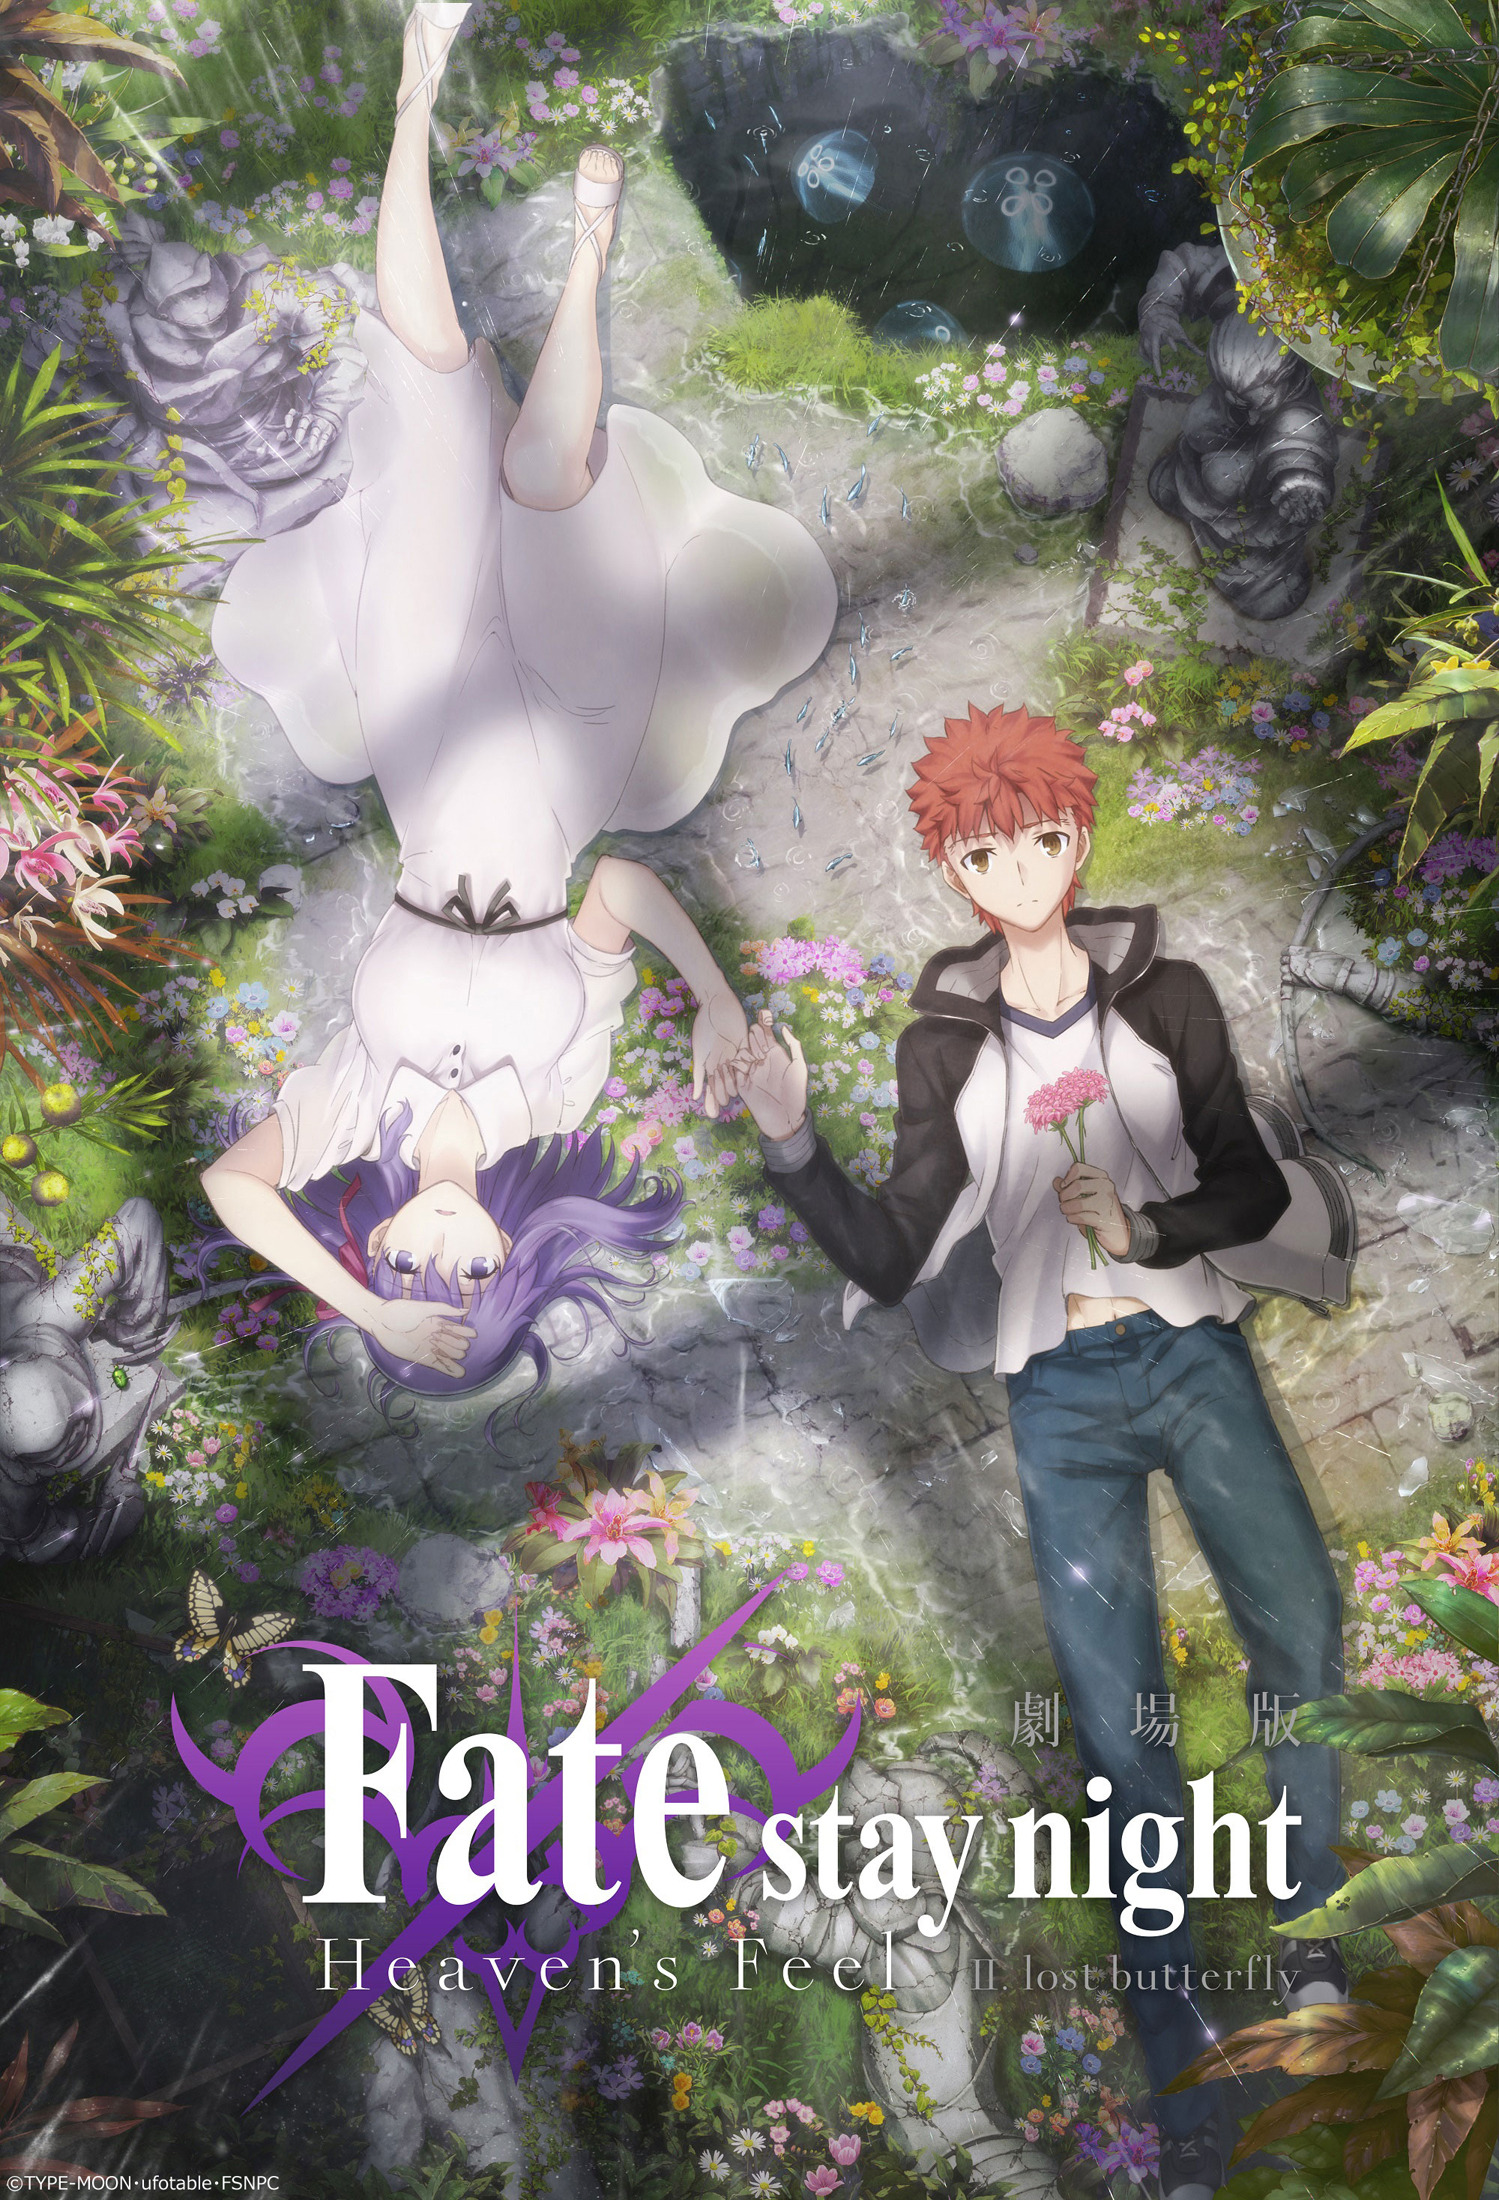 【动漫资源】【中文字幕】Fate/stay night [Heaven's Feel]第二章《lost butterfly》剧场版【1080P】蓝光预告 动漫资源 第1张